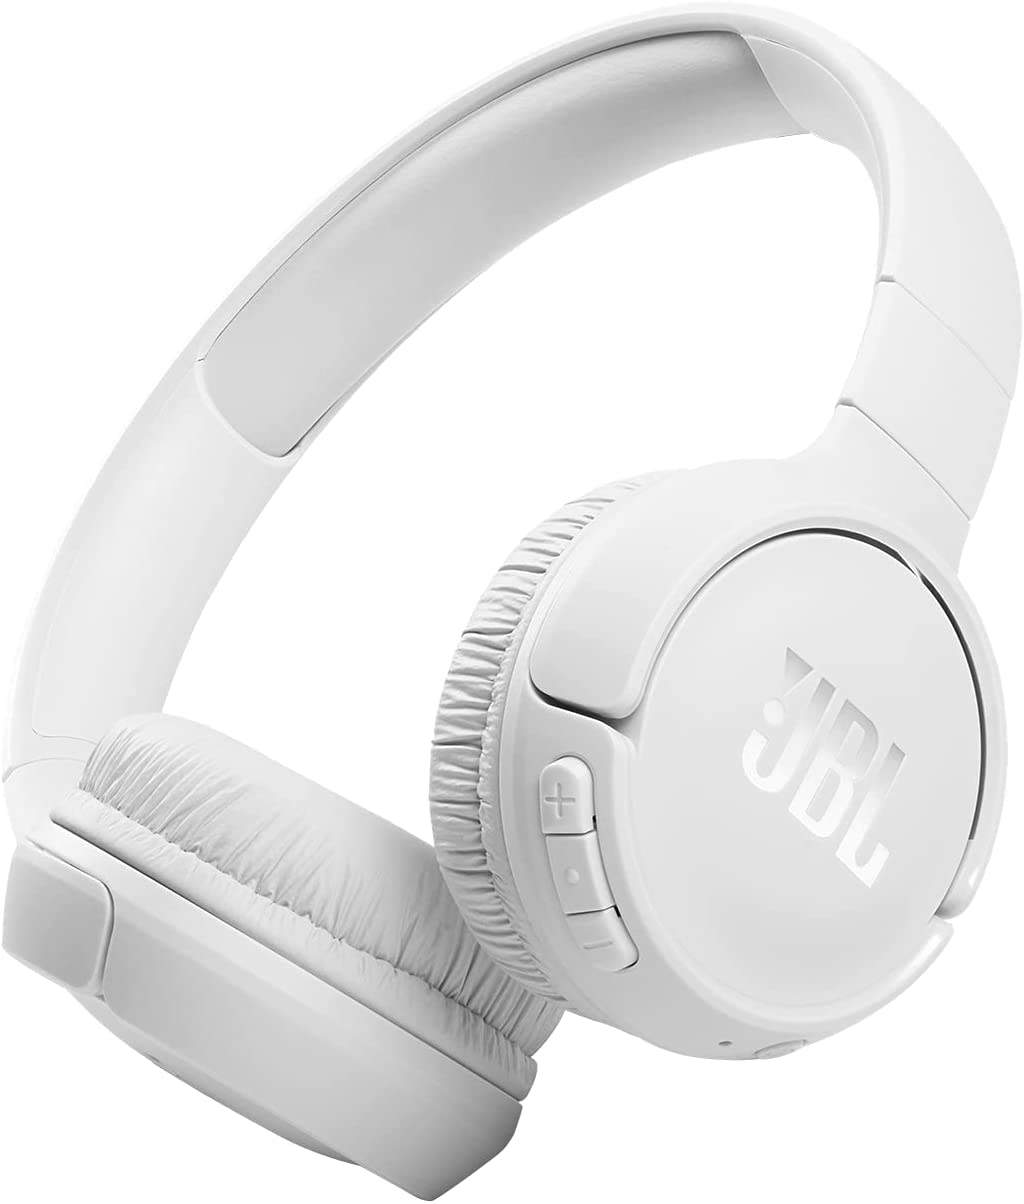 Le cuffie Bluetooth JBL Tune 510